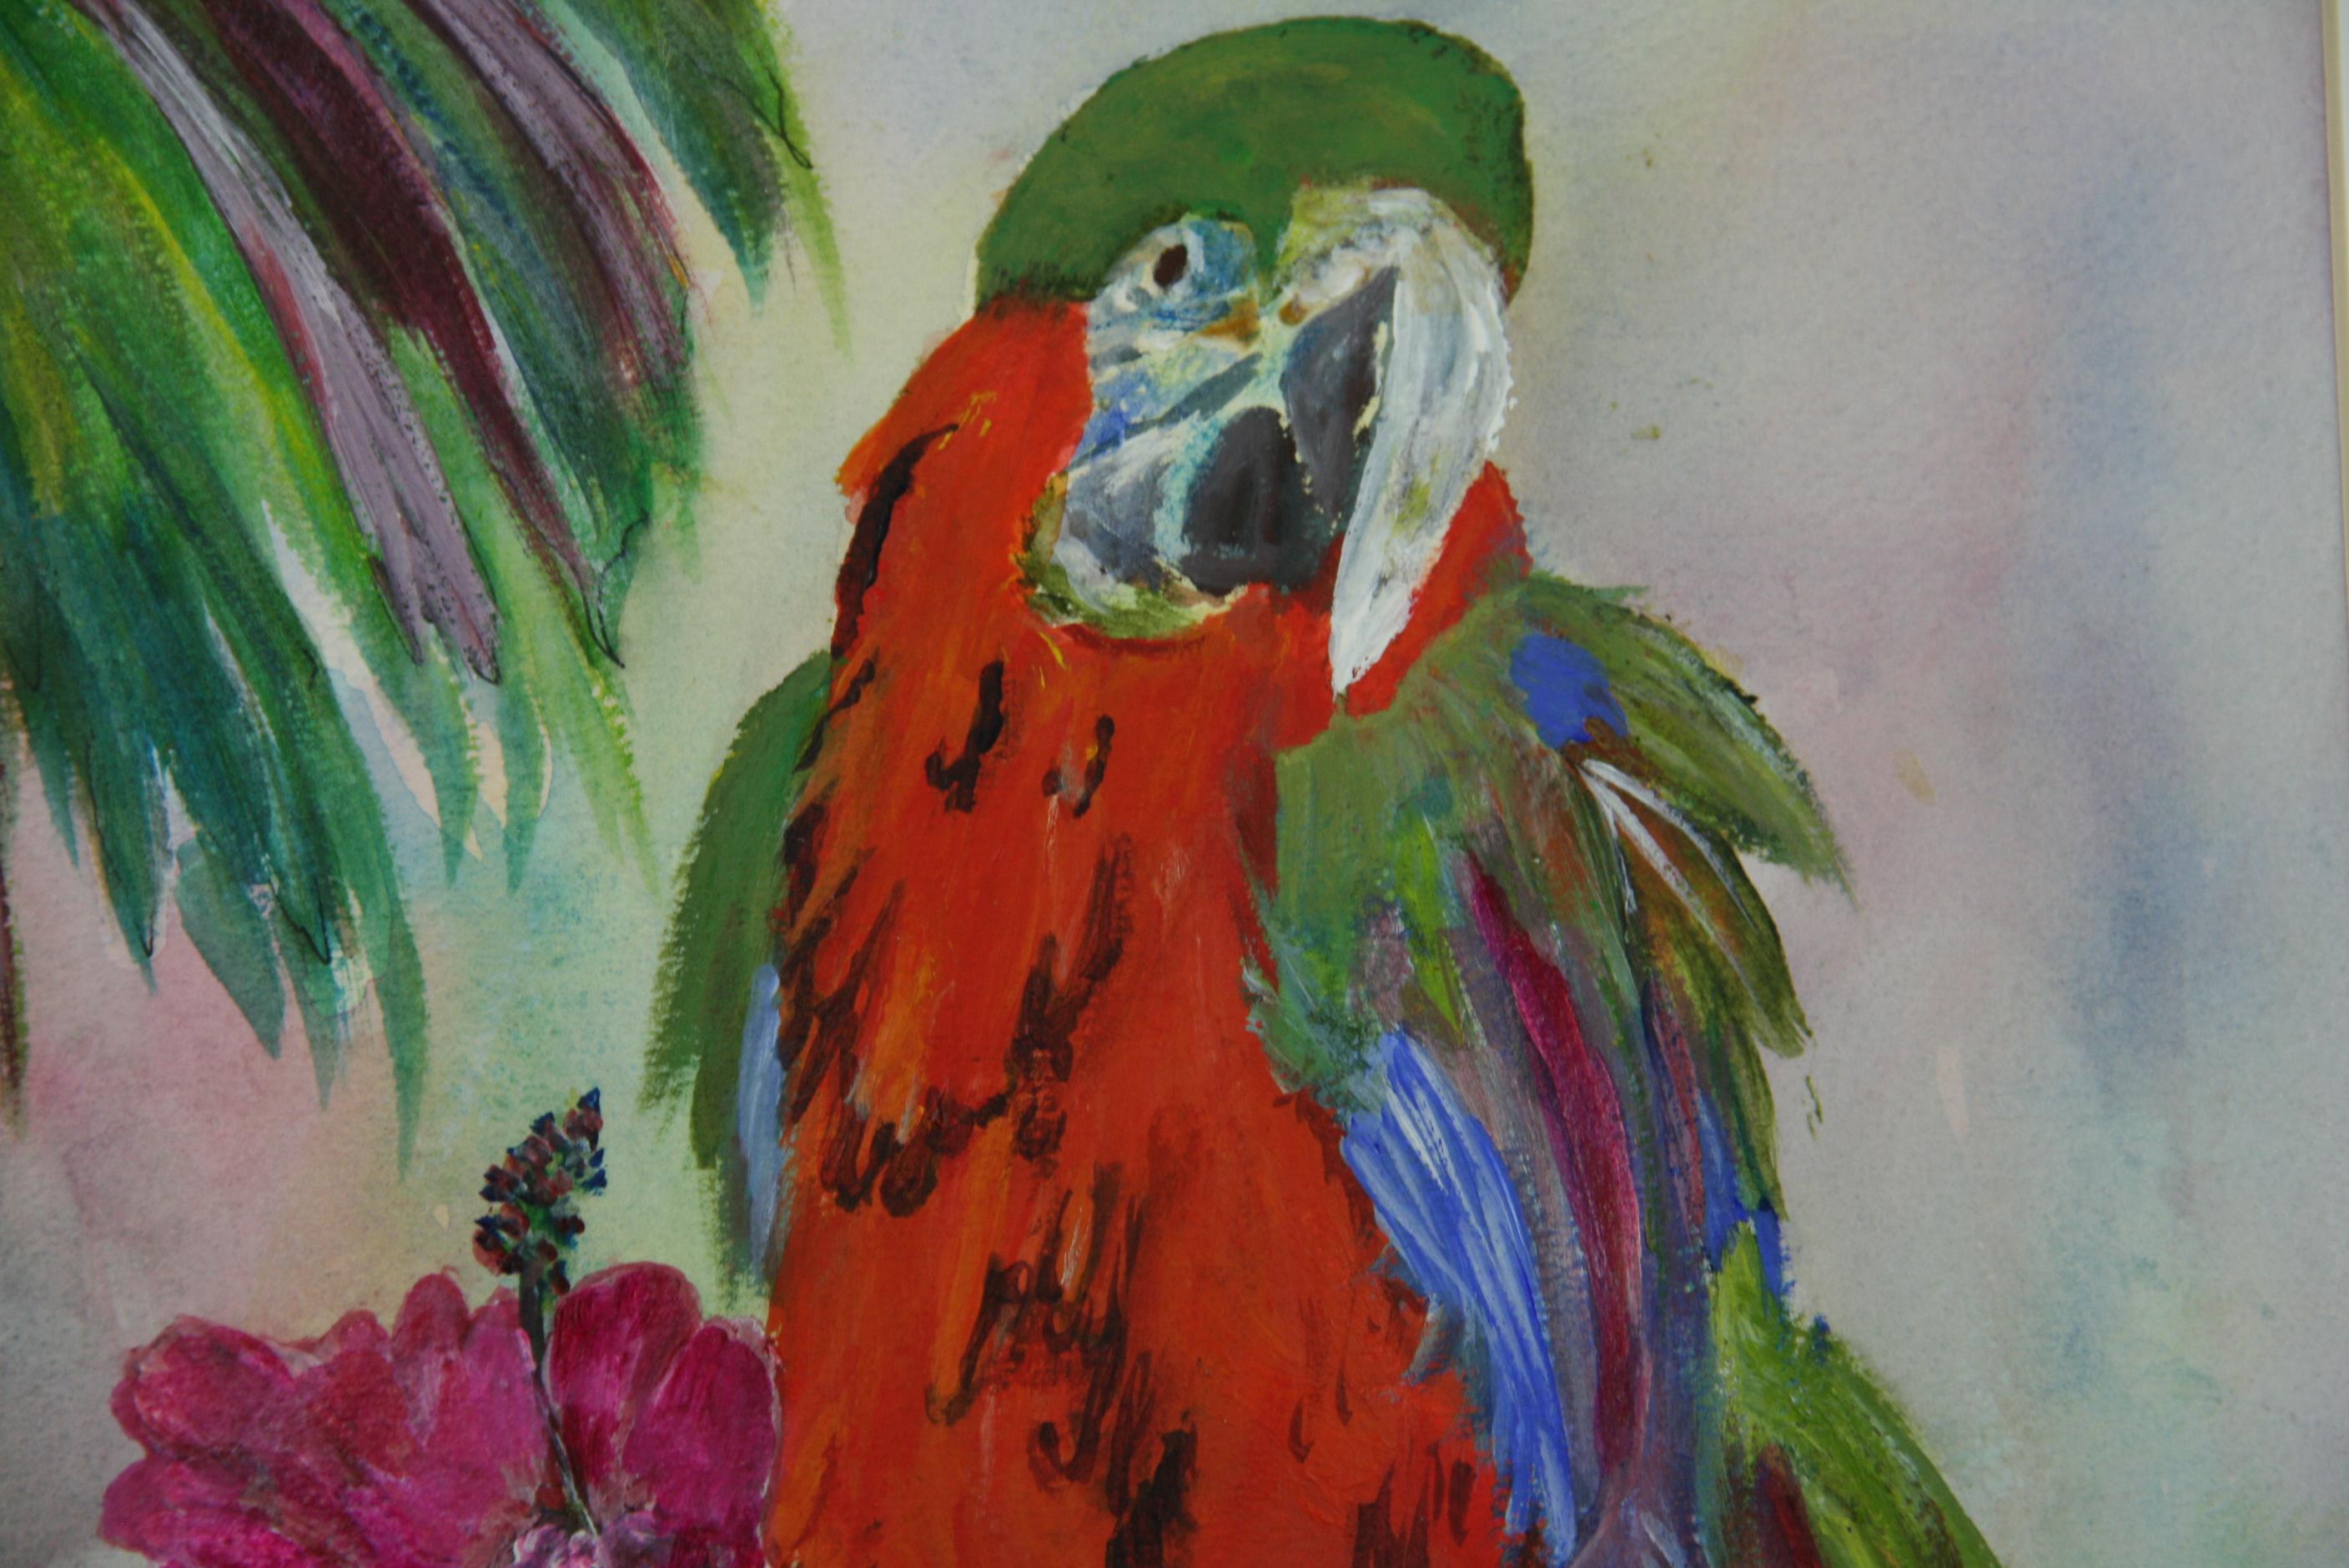 3862 Bunte Papageienmalerei auf Künstlerpapier in einer Matte
Bildgröße 13.5x10.5